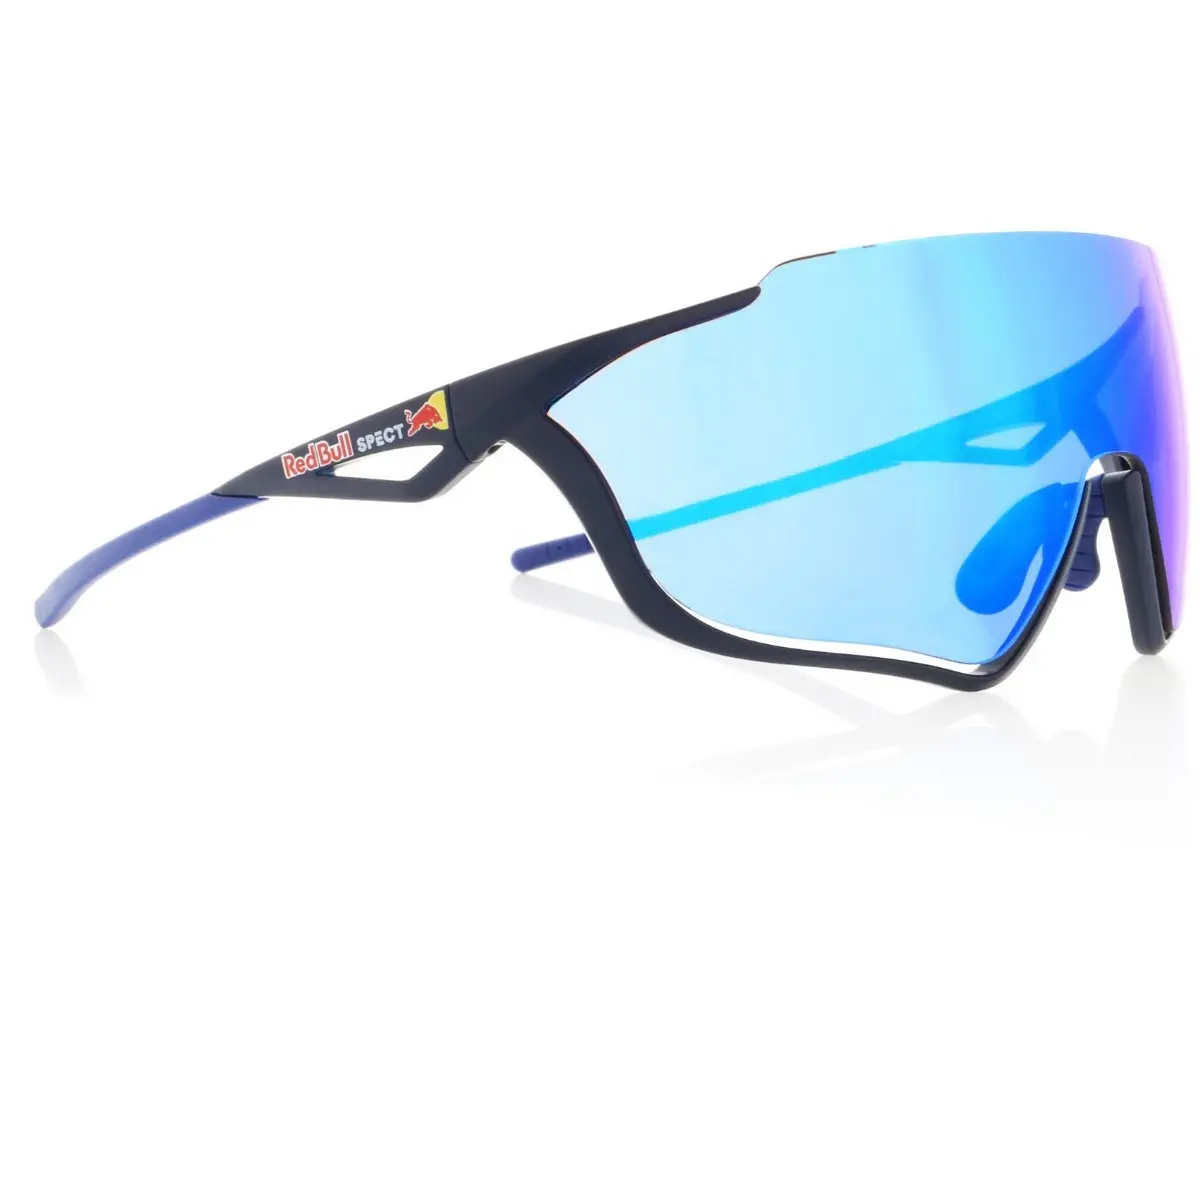 RedBull SPECT Pace - noir avec verres miroir bleus - lunettes de vélo